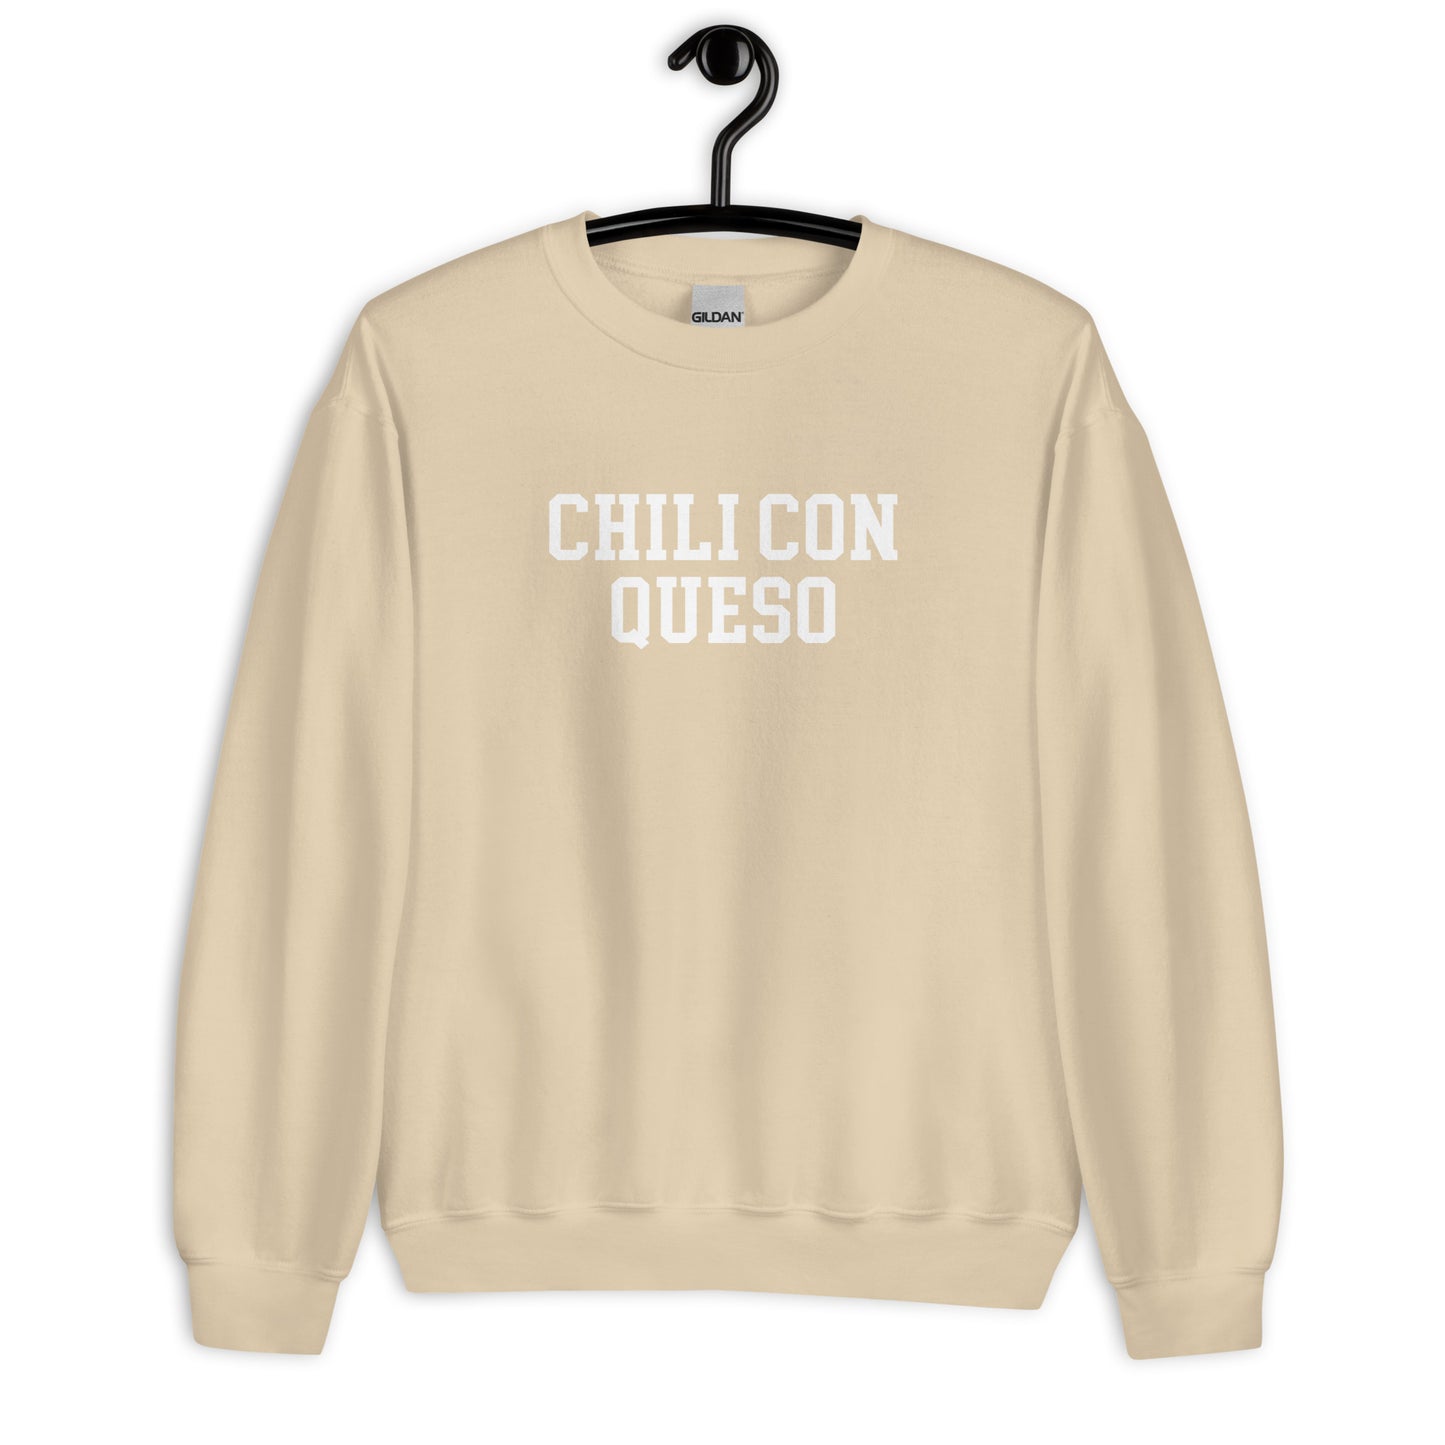 Chili Con Queso Sweatshirt - Straight Font